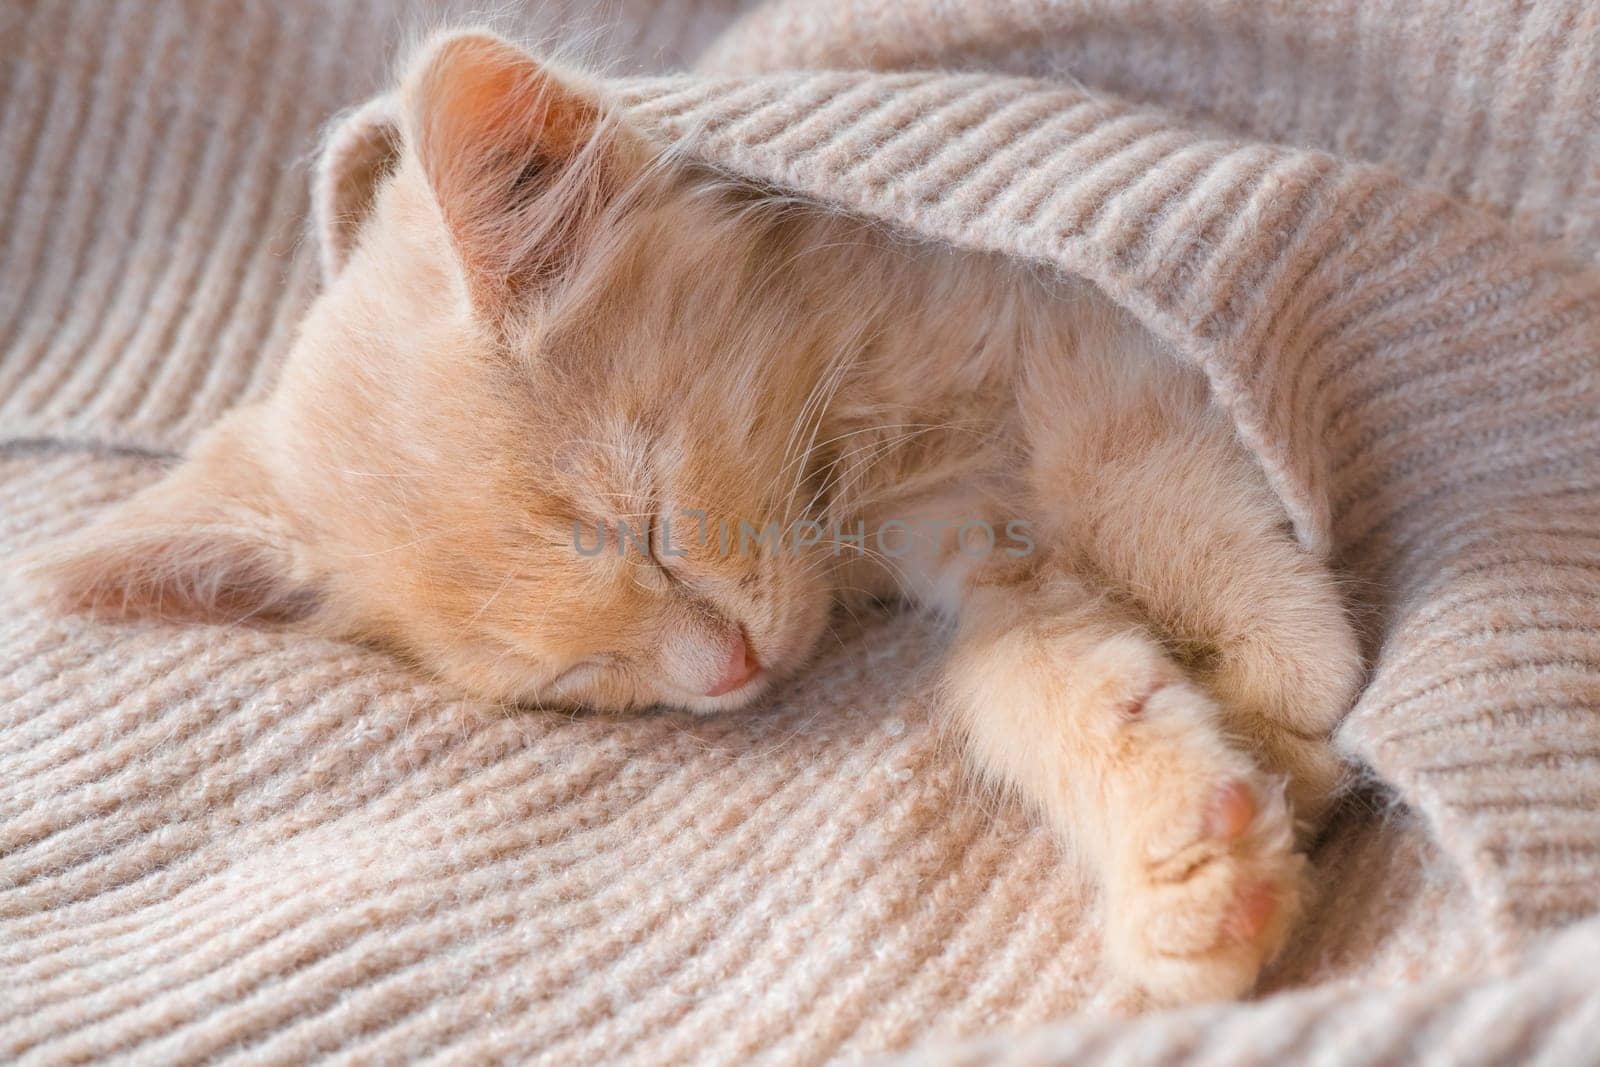 Cute little ginger kitten lies on a beige knitted bedspread by Ekaterina34